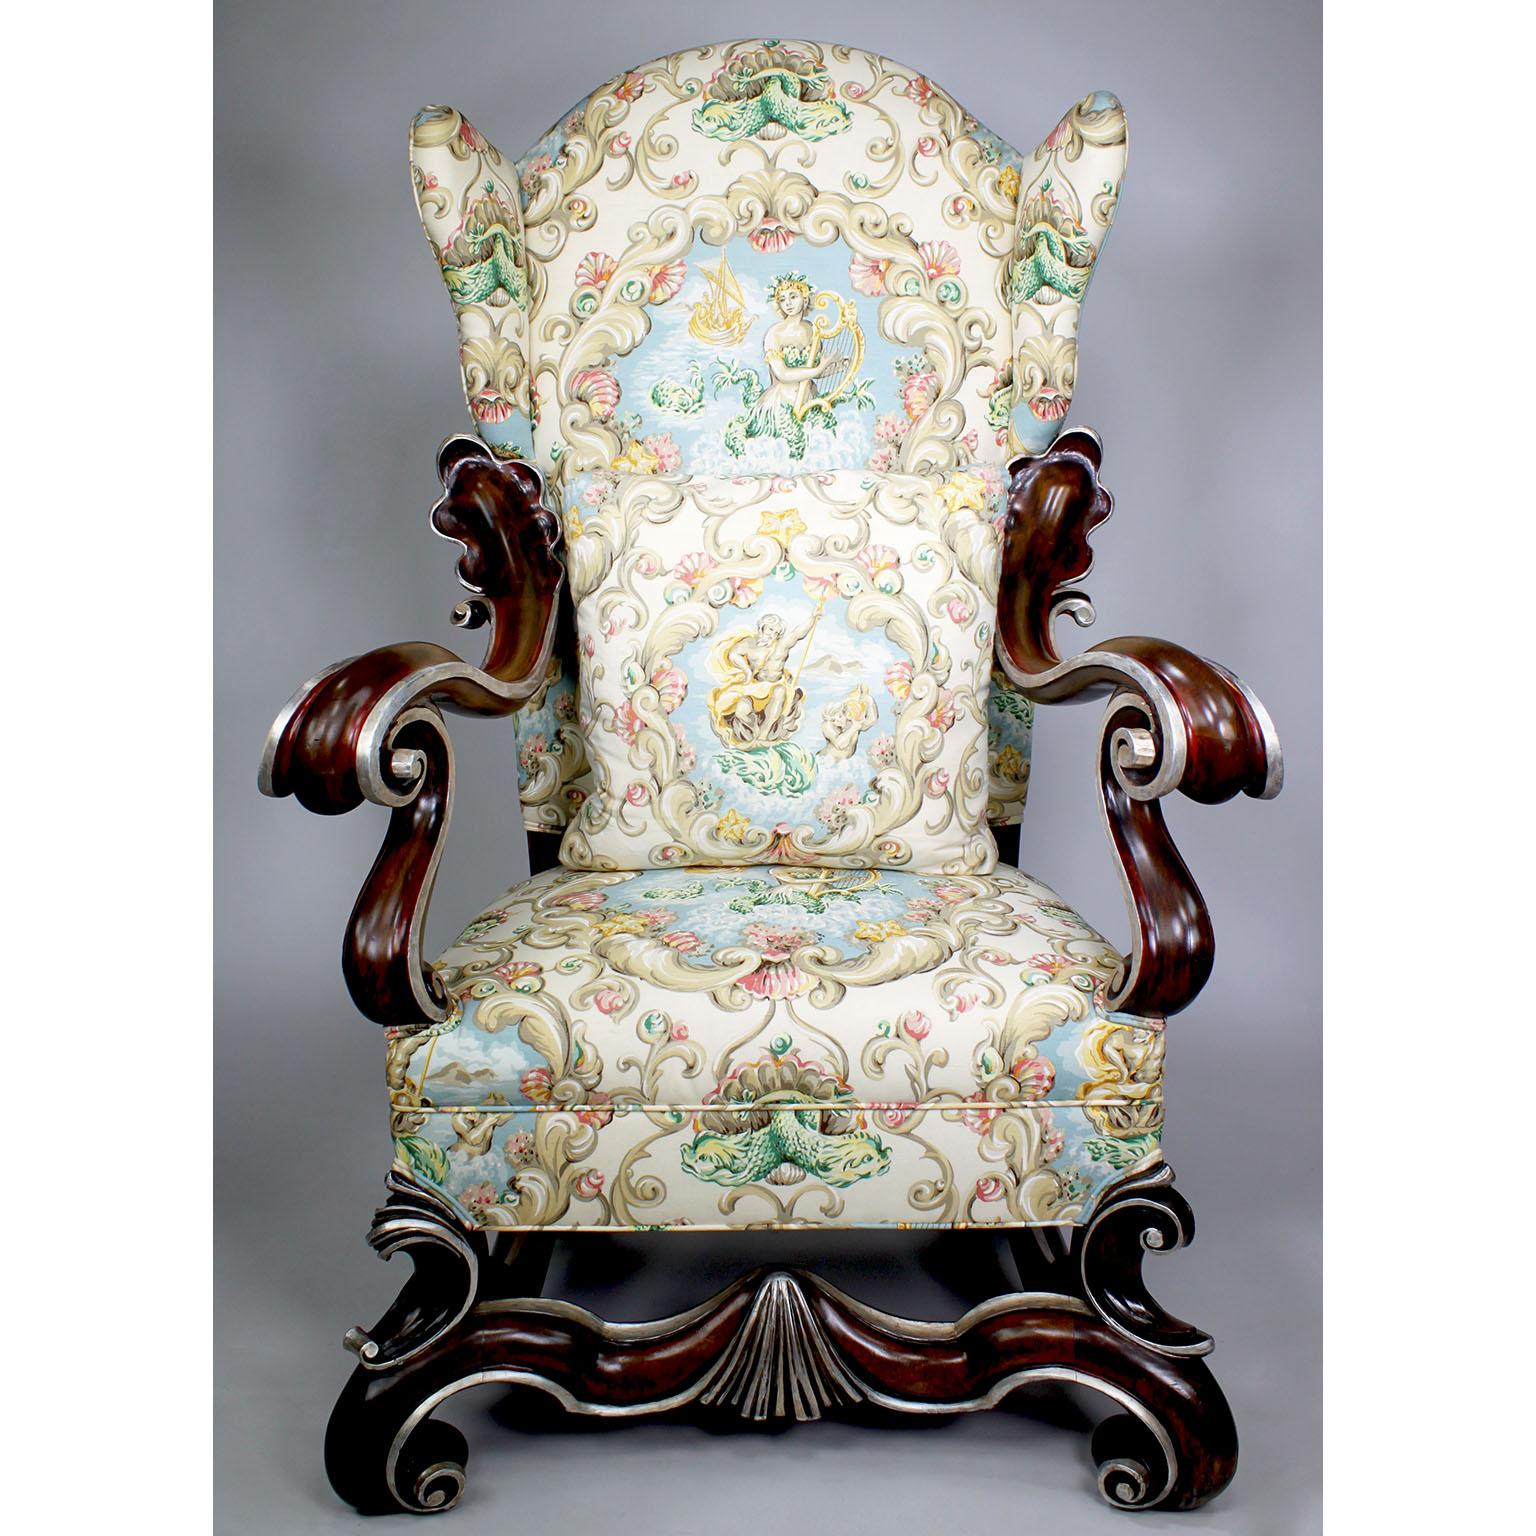 Une grande paire de fauteuils trônes ailés de style néo-baroque, joliment sculptés, en noyer et feuilles d'argent parcellaires. Les hauts fauteuils rembourrés à dossier ailé, avec des cadres en noyer sculptés et chantournés dans une teinture de